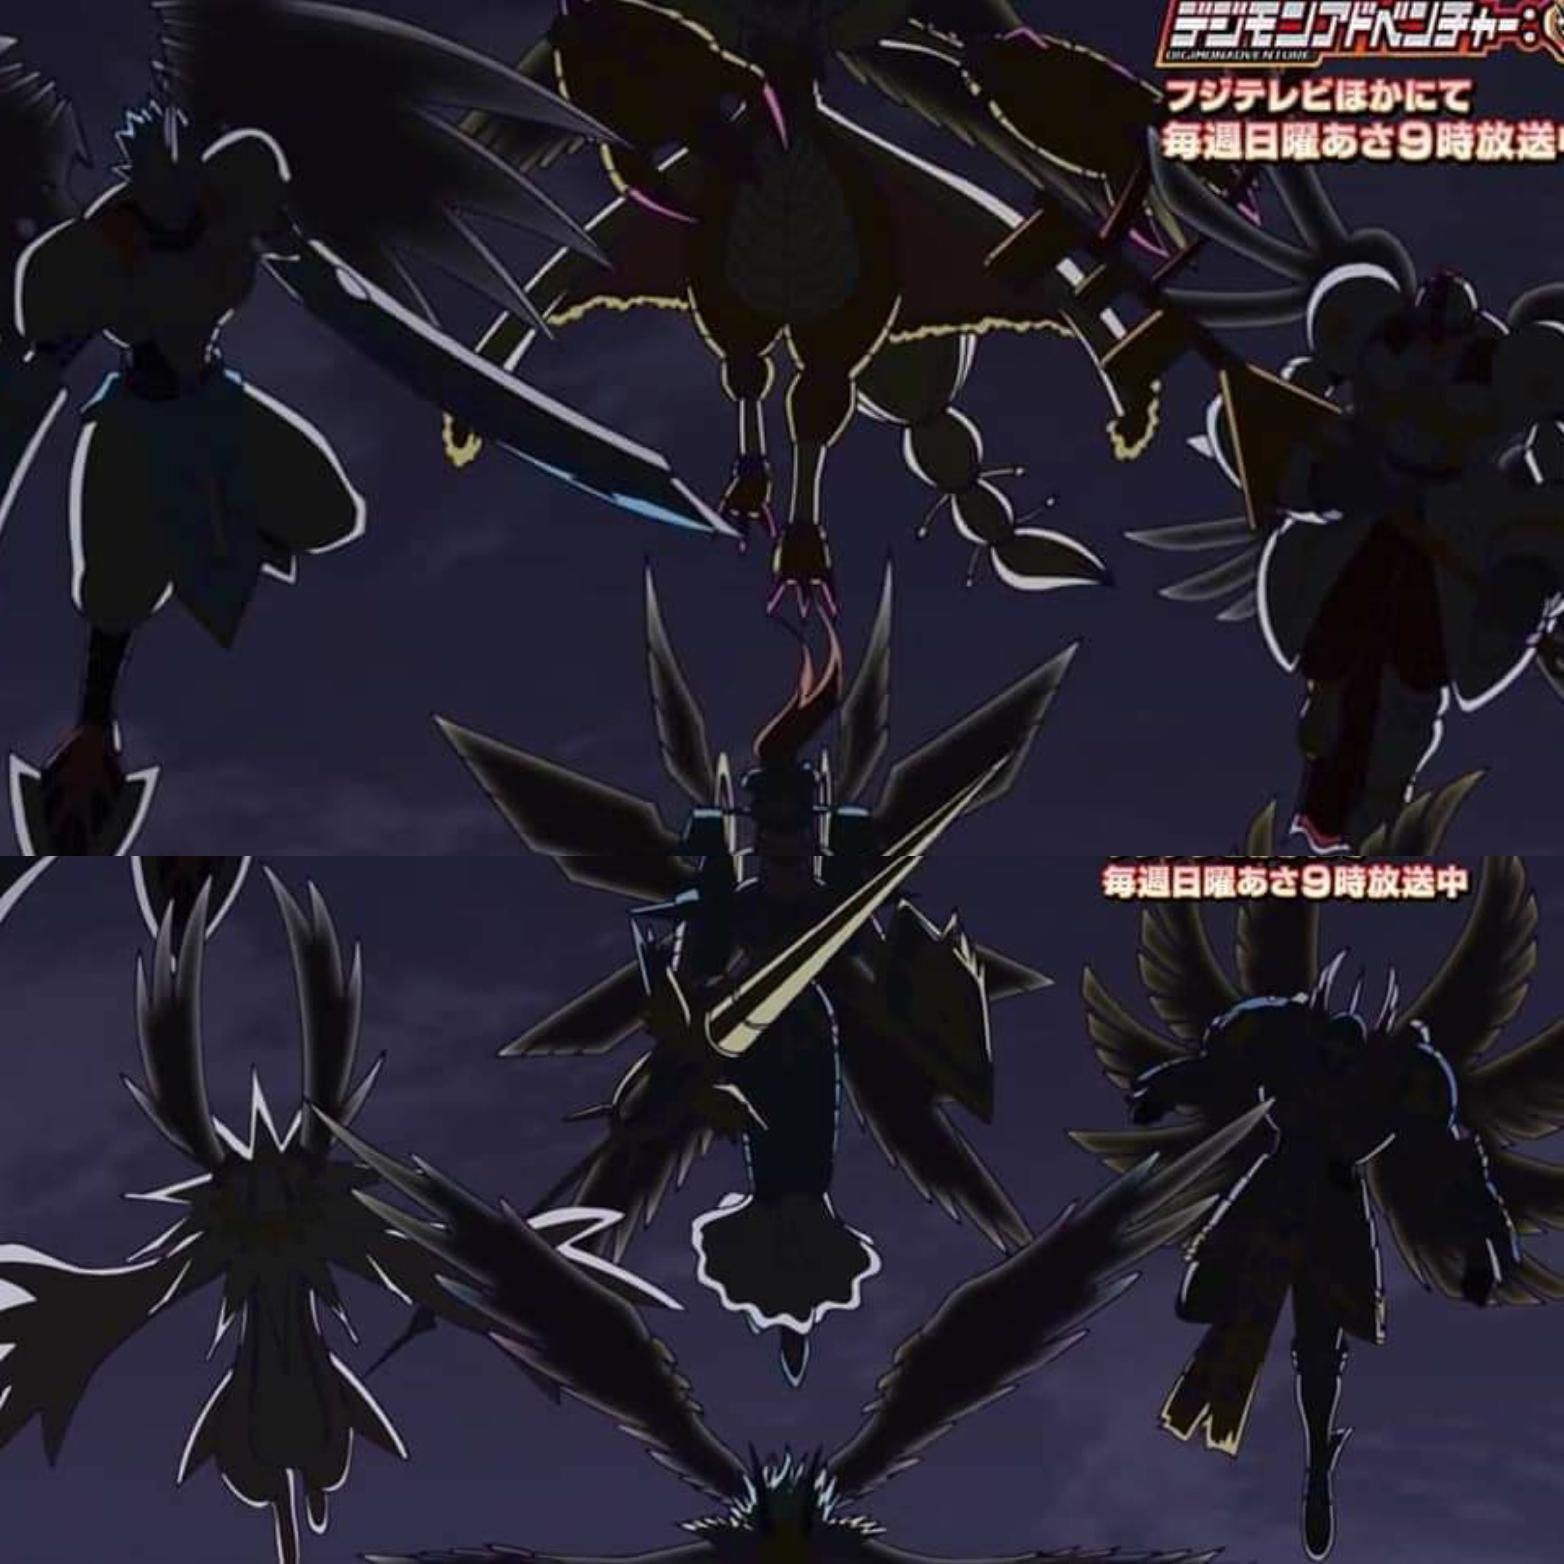 Teaser do reboot de Digimon sugere chegada de monstros místicos